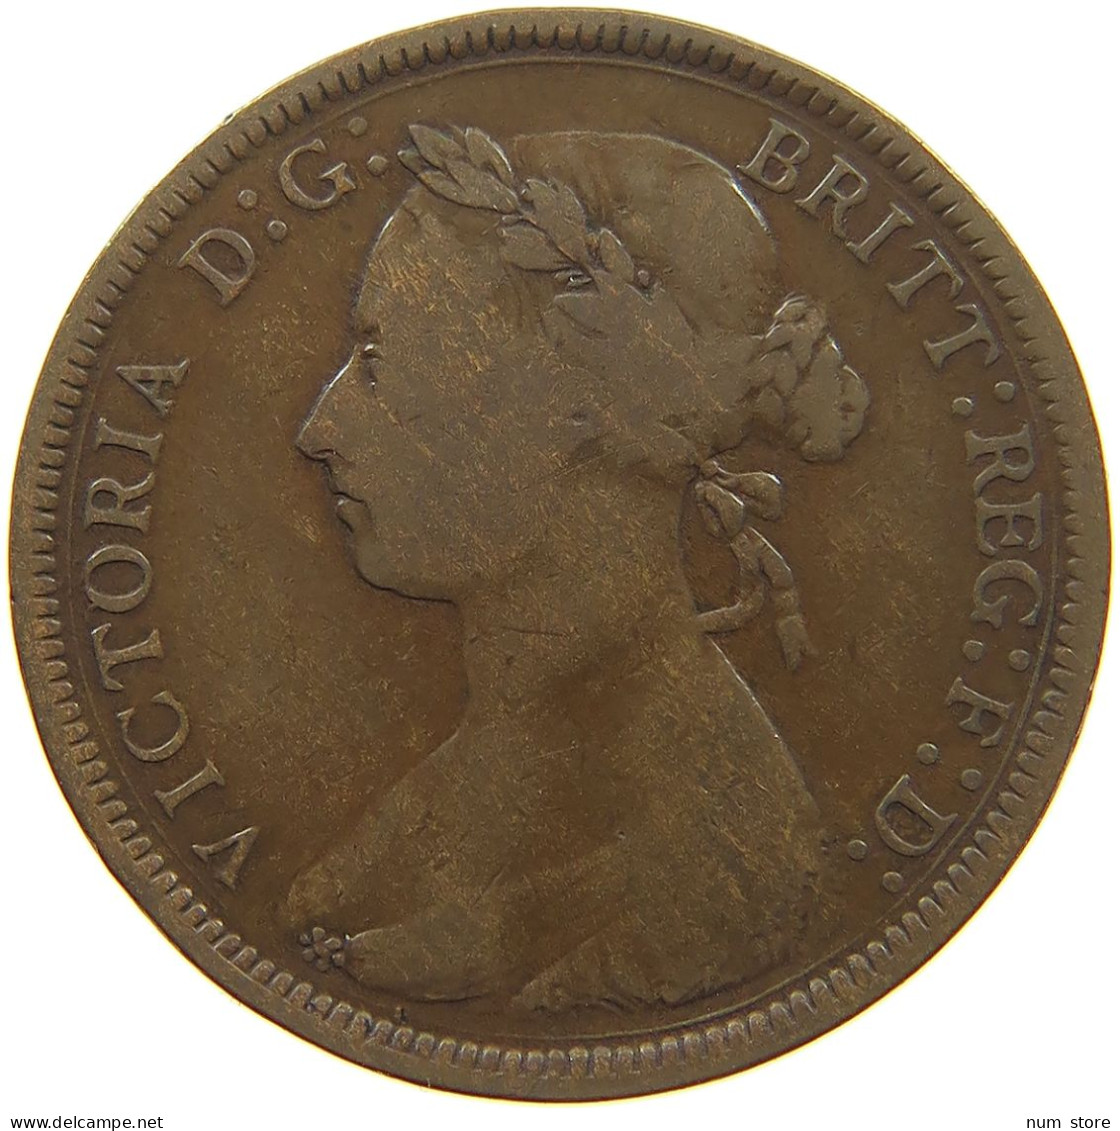 GREAT BRITAIN HALFPENNY 1887 Victoria 1837-1901 #c018 0129 - C. 1/2 Penny